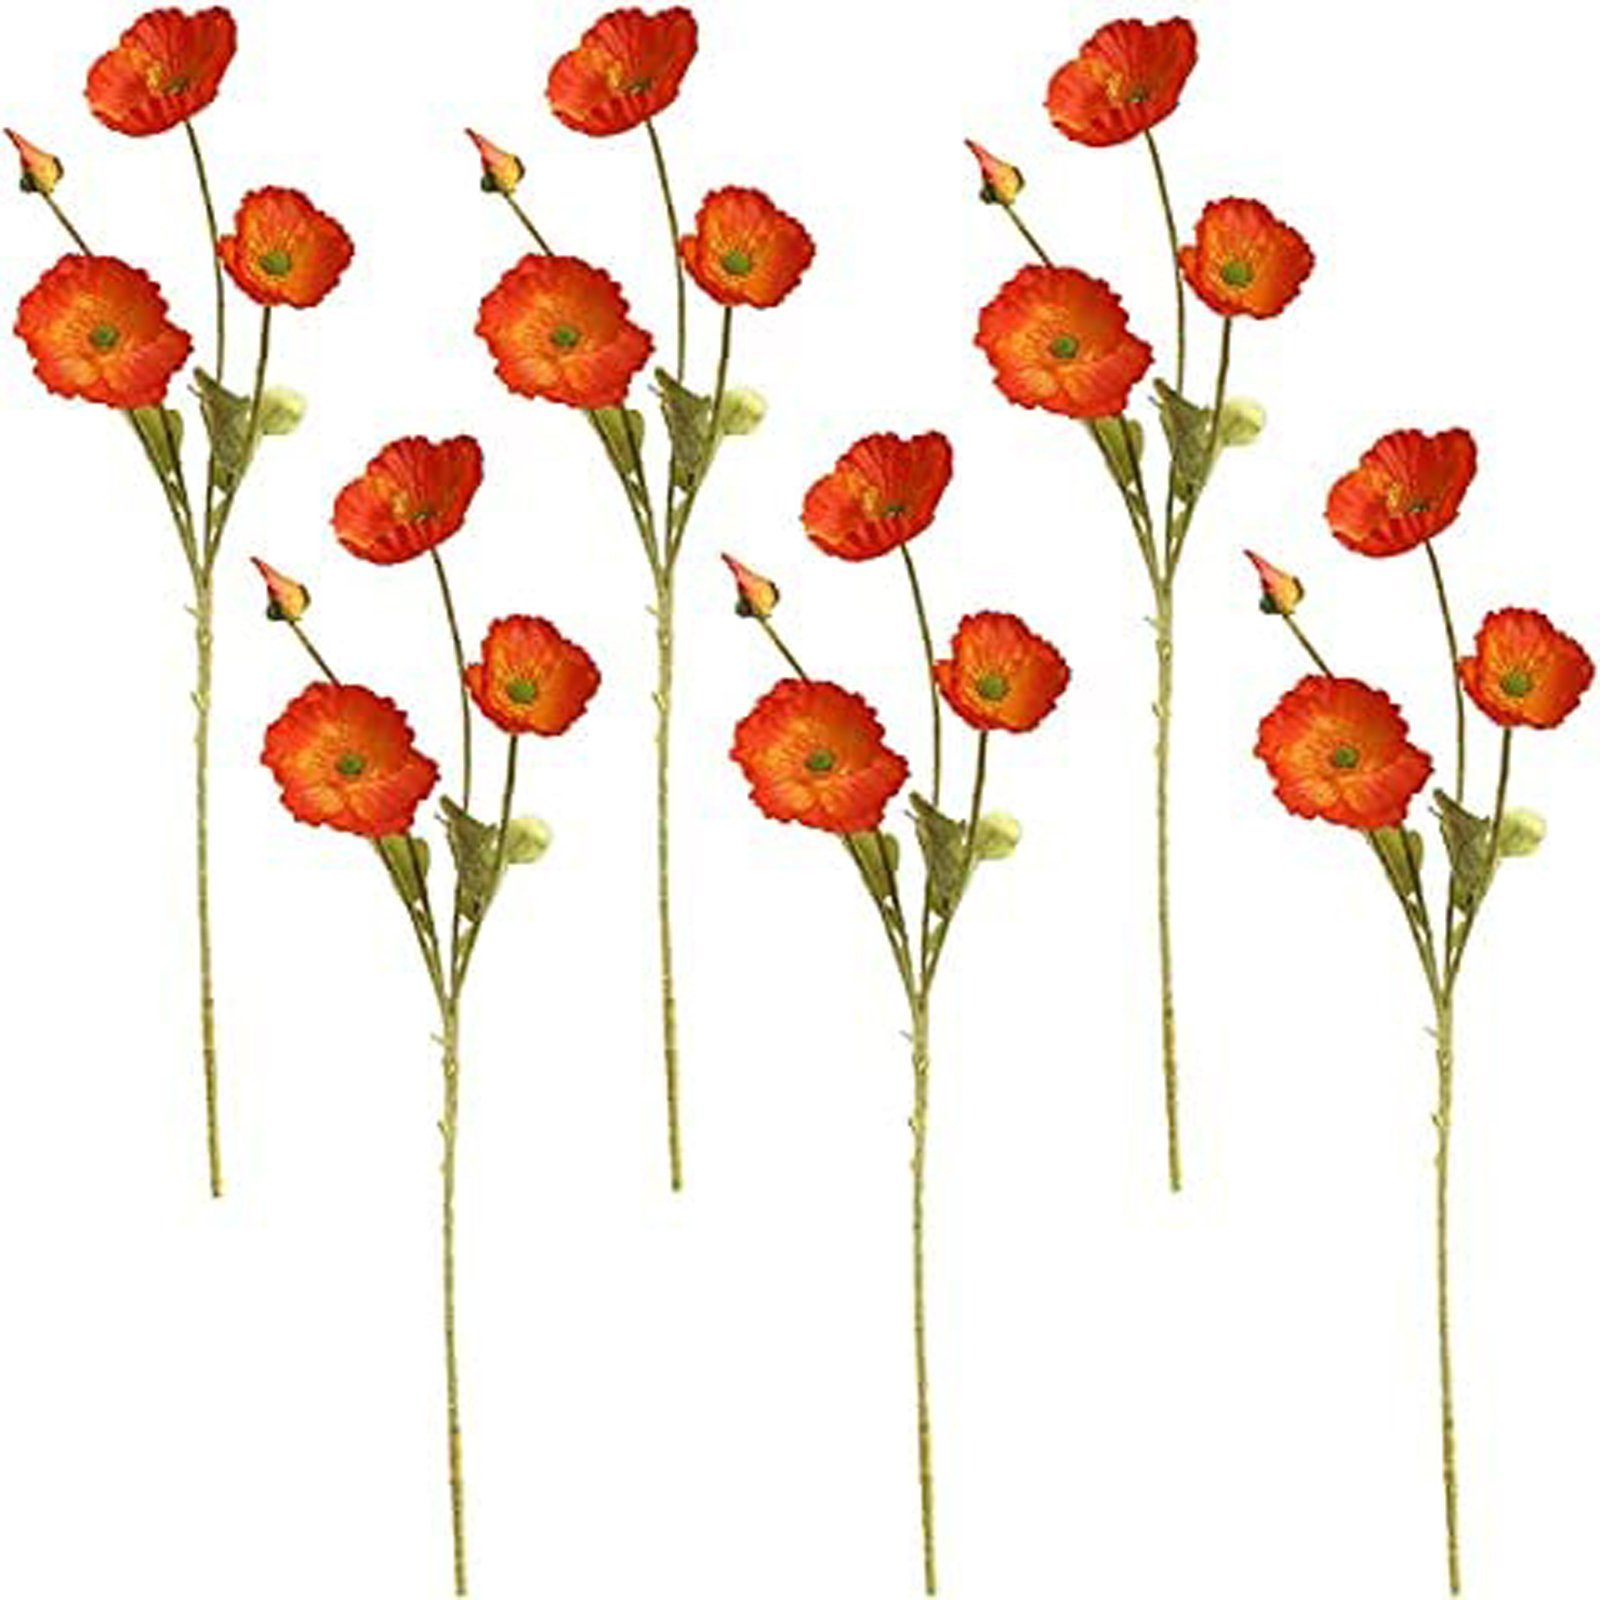 SEEZSSA, Haus Beflockung künstliche MohnSeidenblumen Für Pflanzen Kunstzweig lang Künstlicher Mohnblumen-Zweigmit 4 Blütenköpfen Blumenschmuck,60cm Kunststoff, Orange-gelb